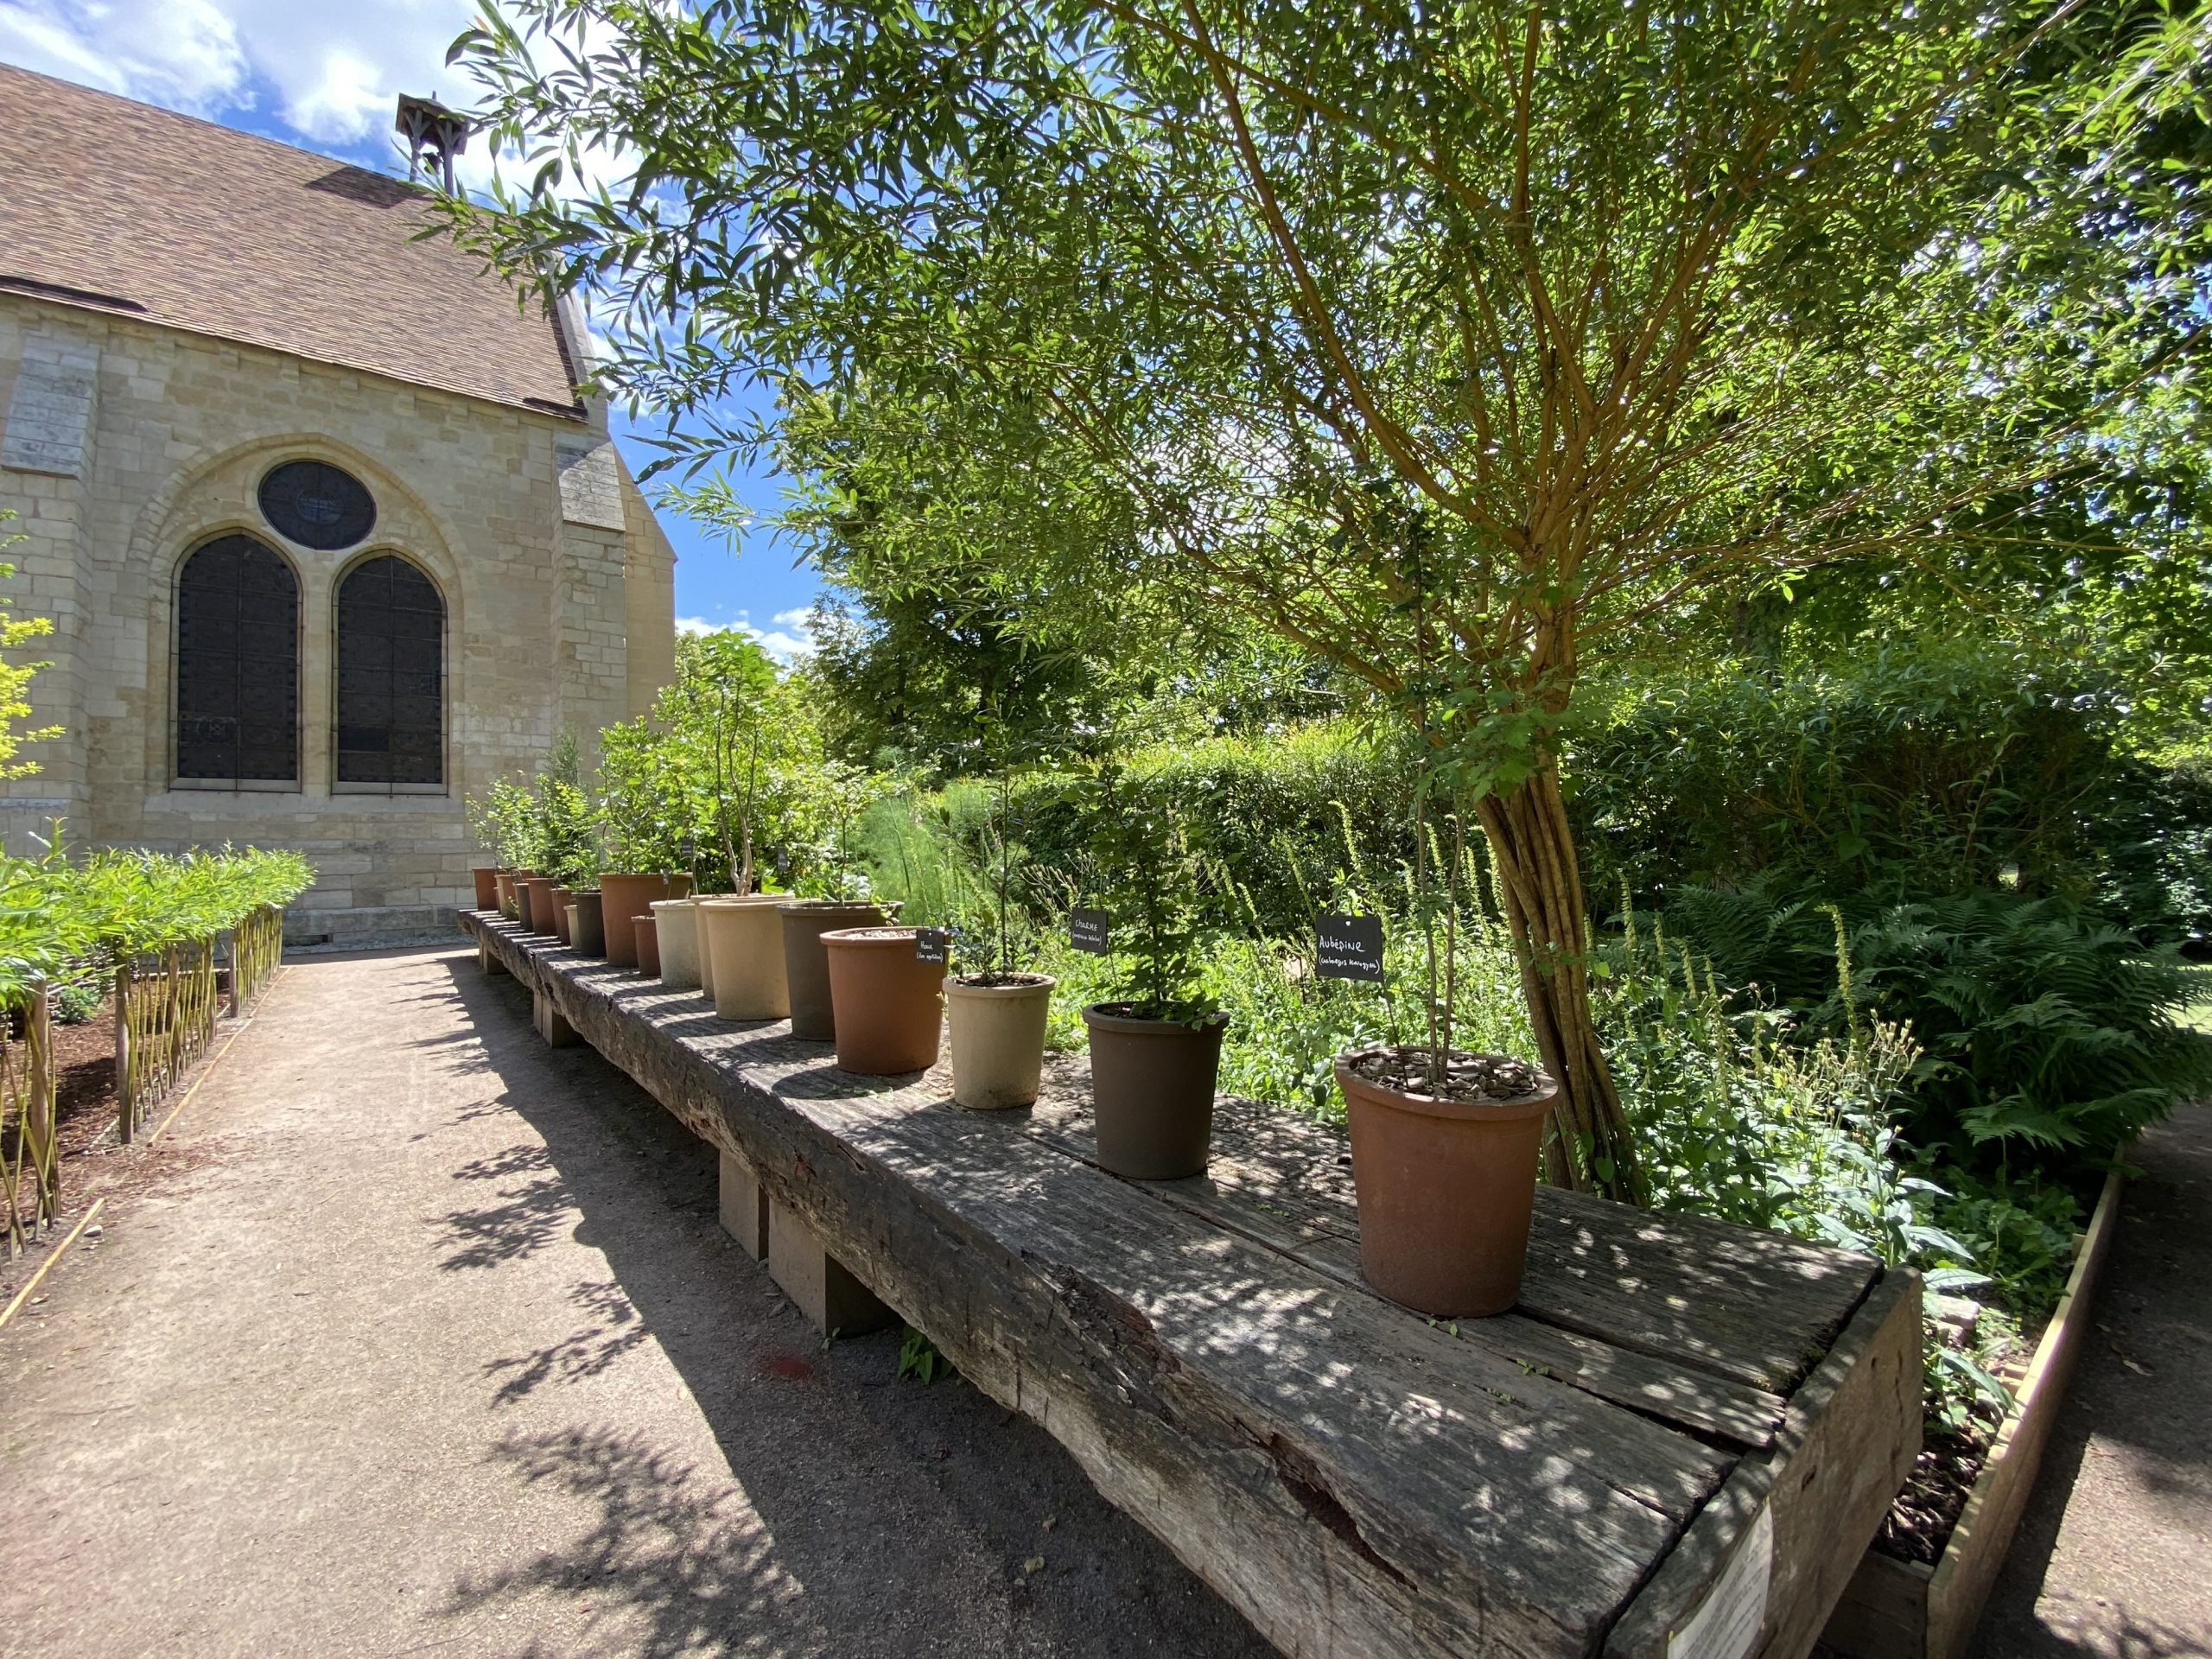 Les trois jardins de l’Abbaye de Royaumont